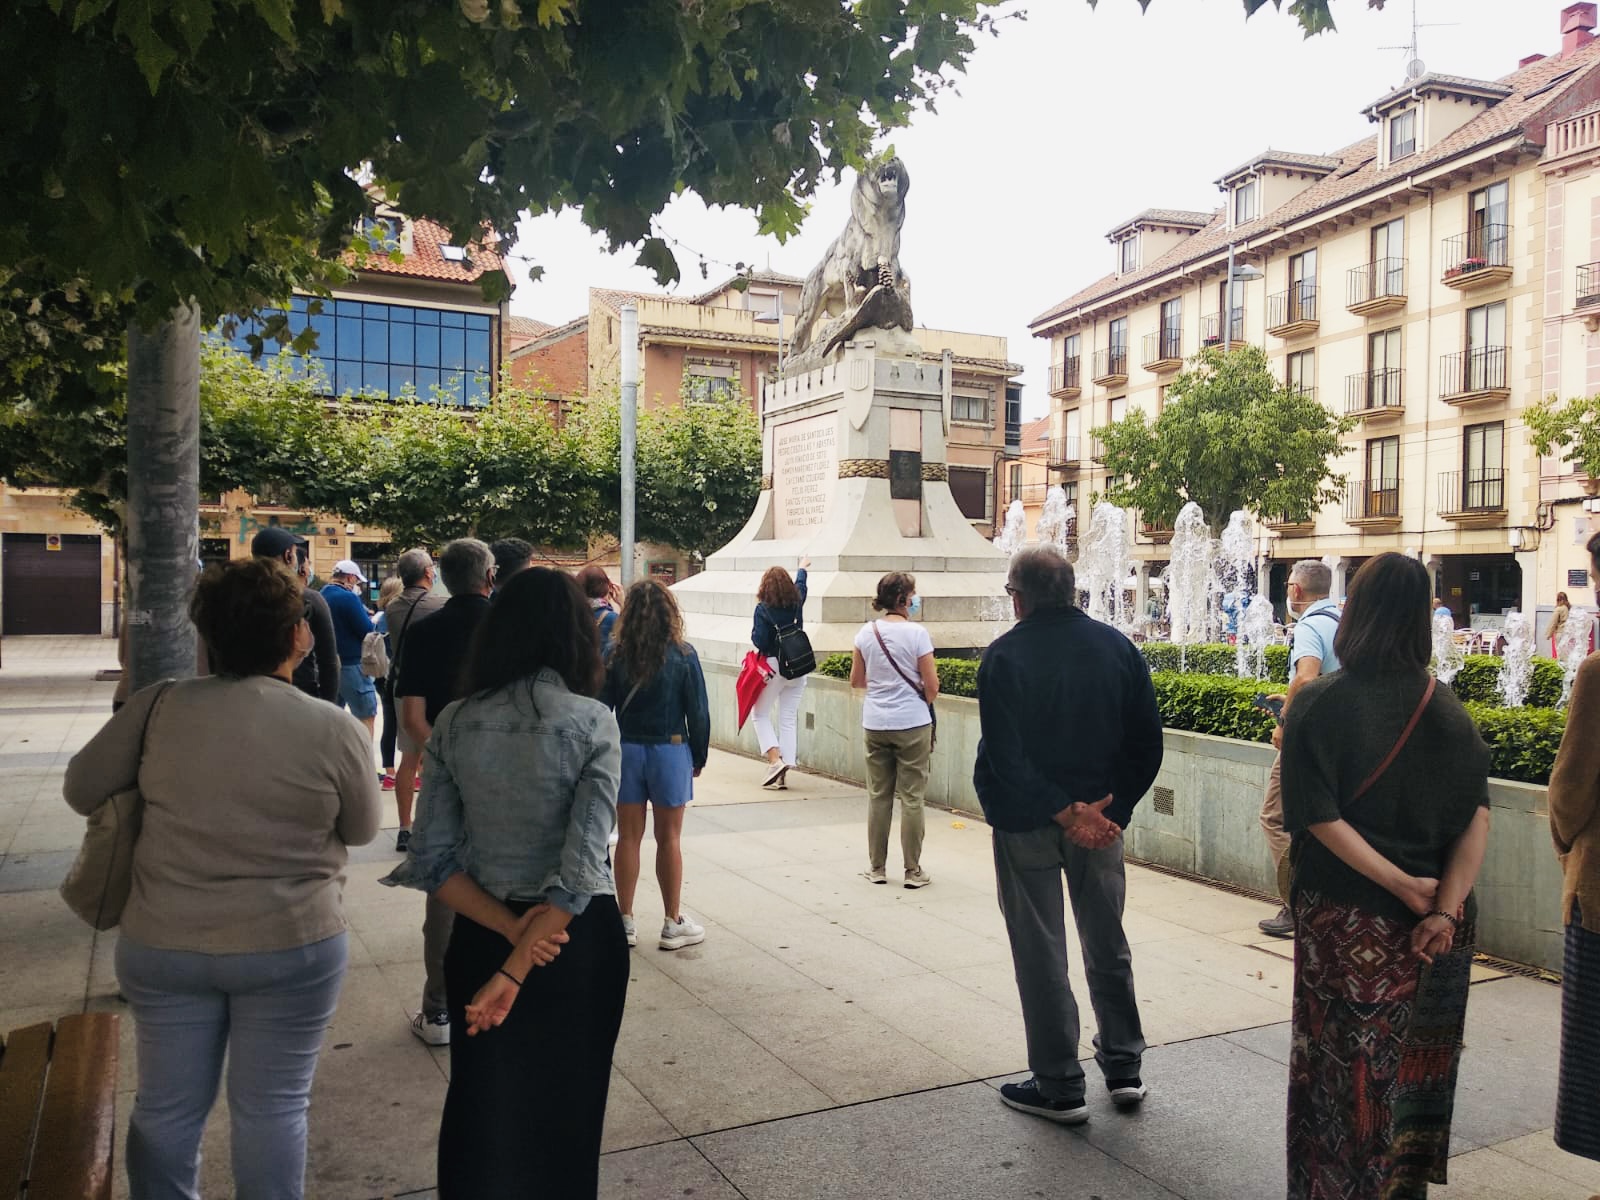 Visita guiada a la ciudad de Astorga, en donde varios pueblos y religiones dejaron aquí su huella. ¿Nos acompaña?